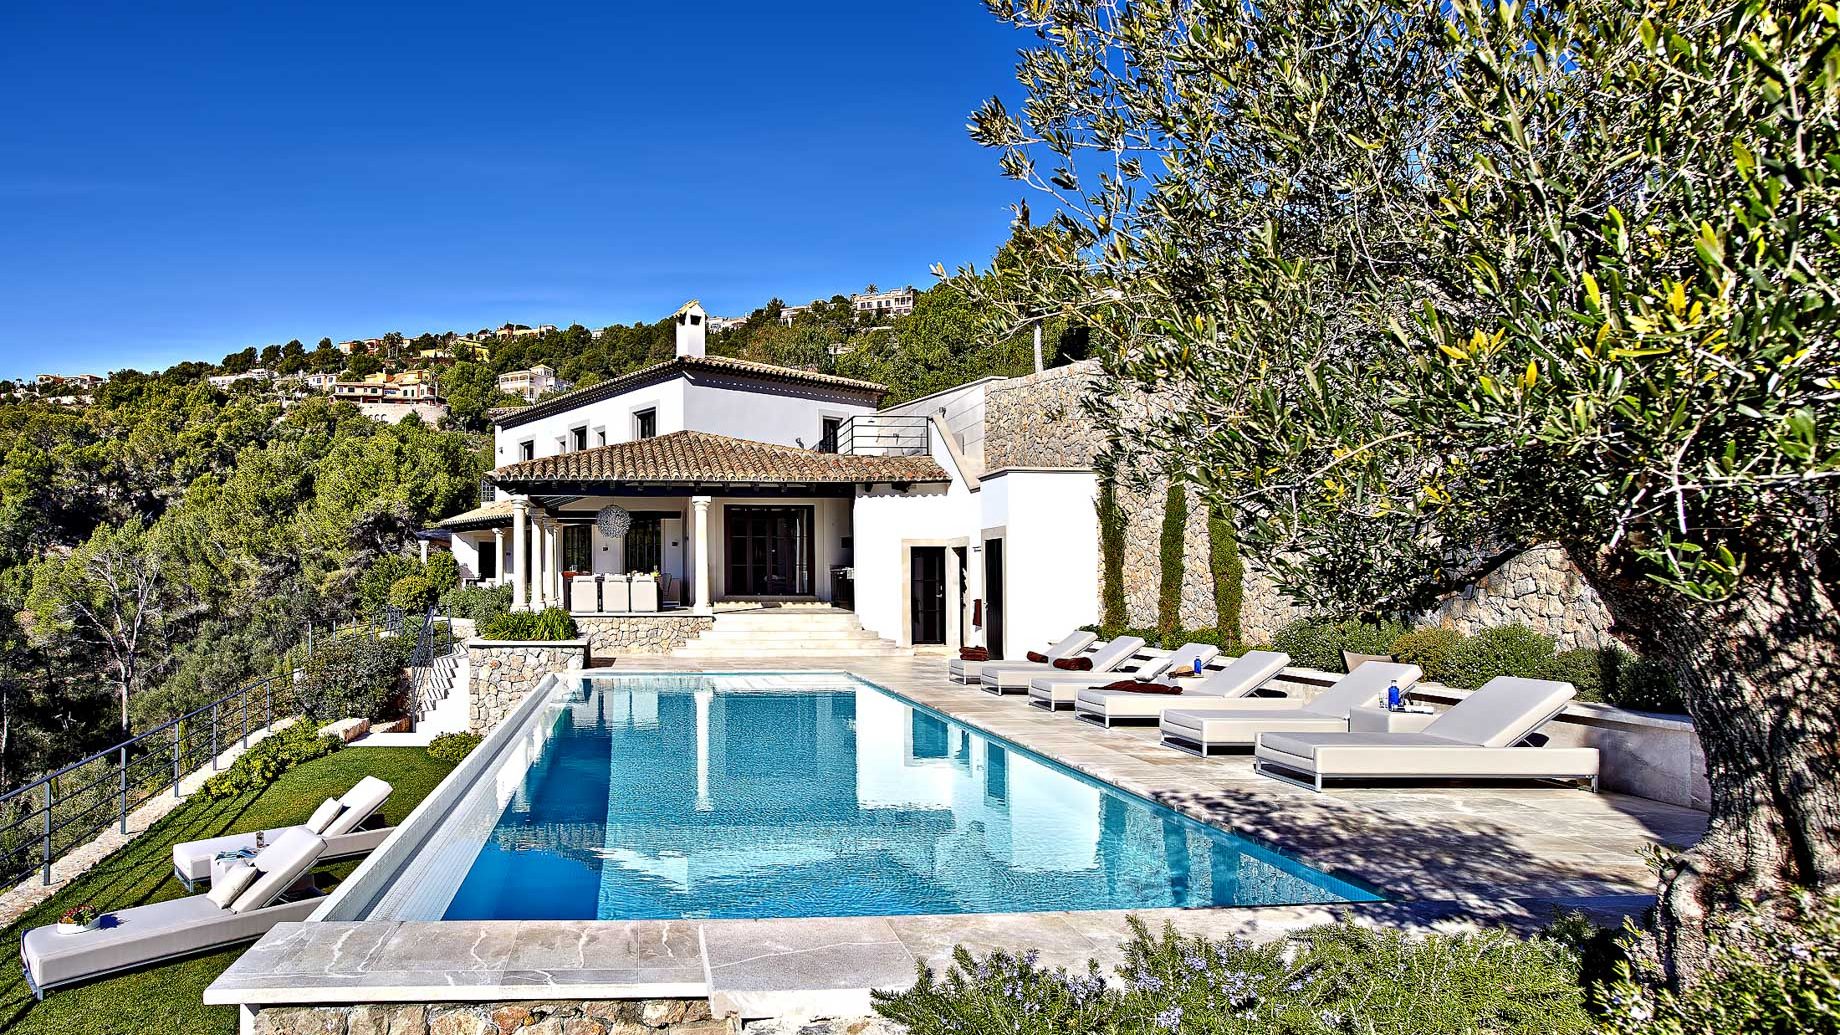 $10.1 Million Villa Ventosa – Monport, Port d’Andratx, Mallorca, Balearic Islands, Spain 🇪🇸